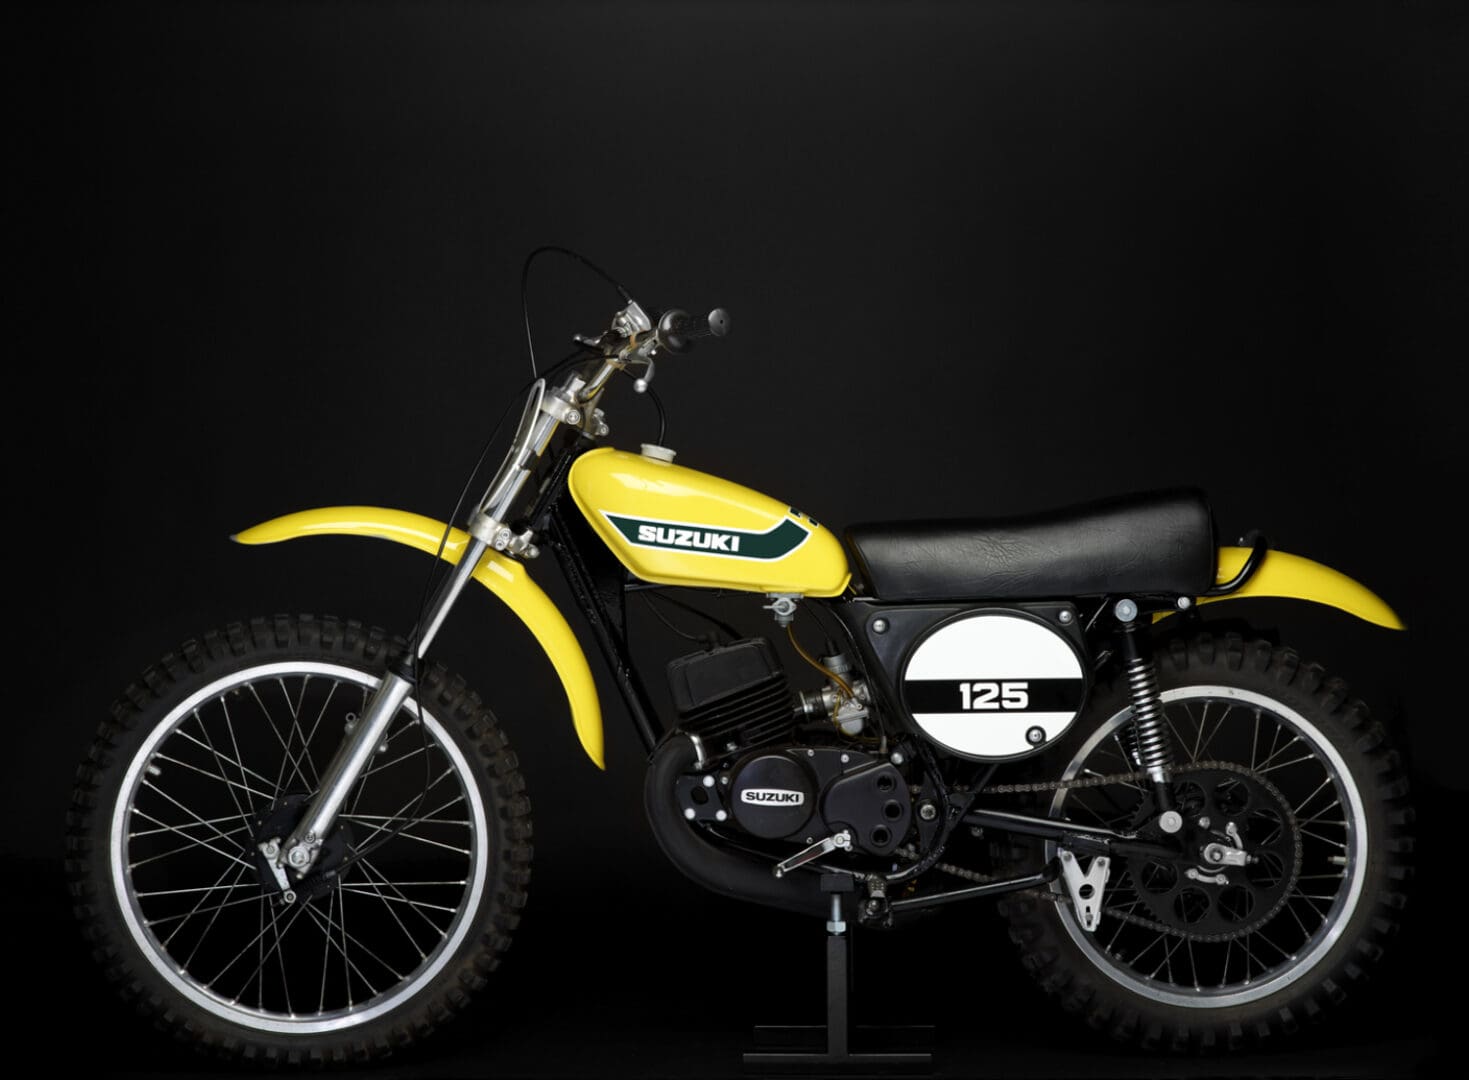 1973 Suzuki TM125K bike on black background